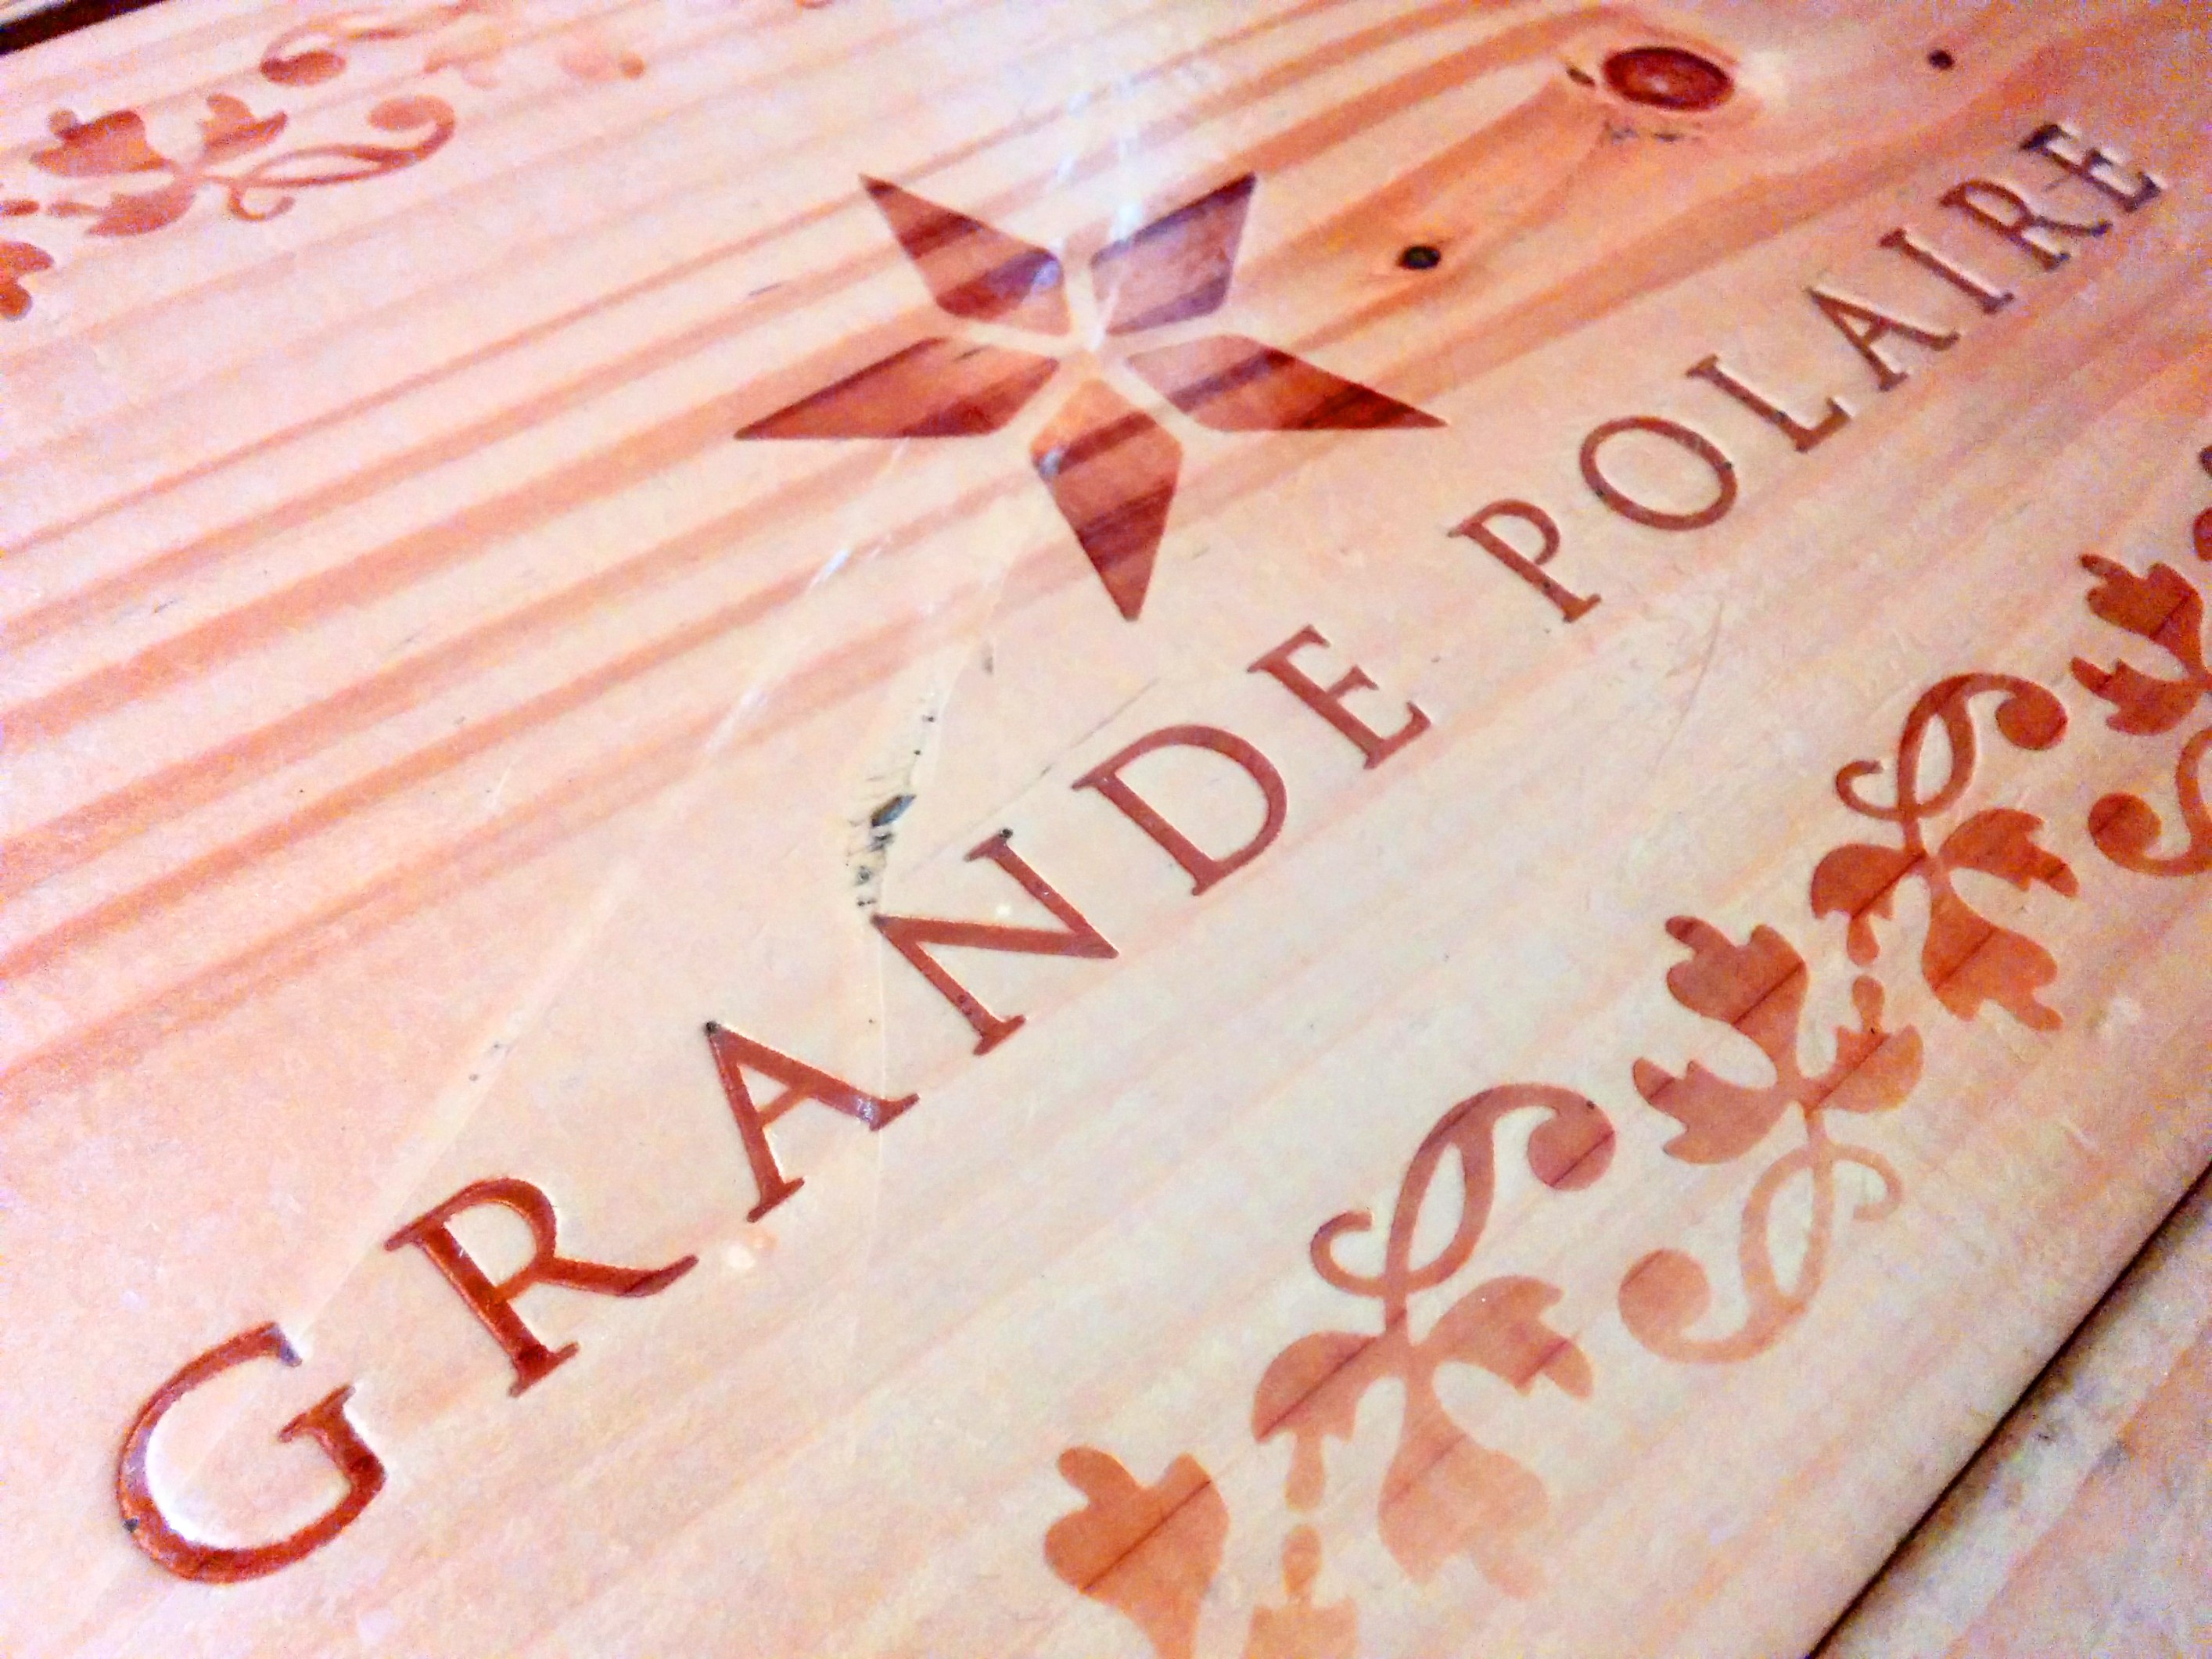 木のテーブルに、 GRANDE POLAIRE という文字が焼き込まれています。